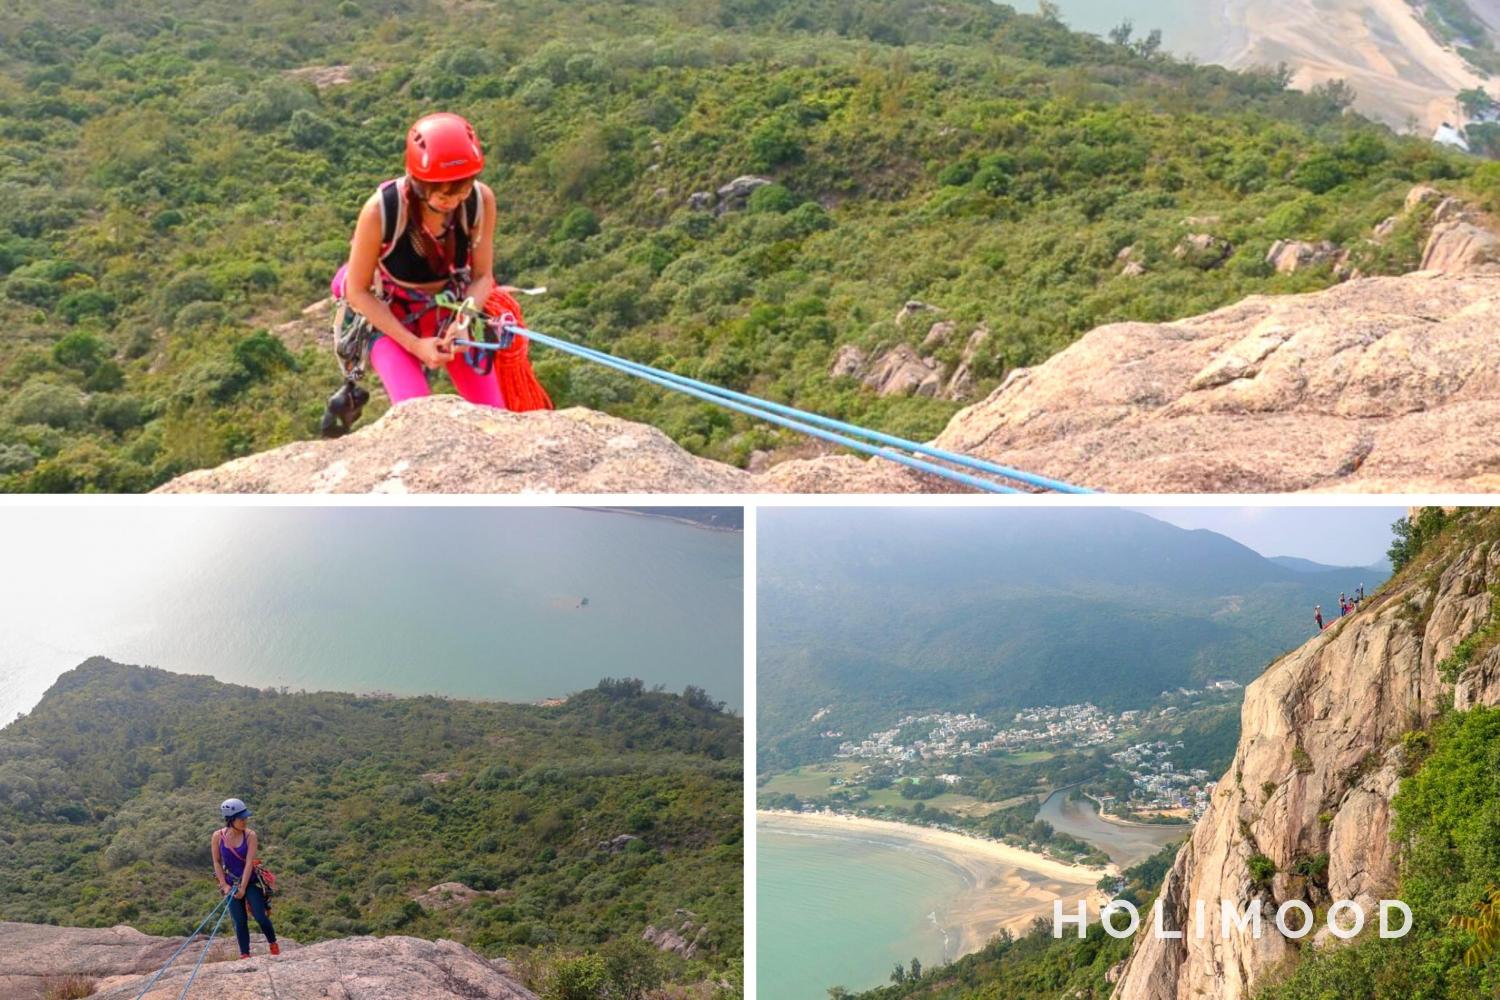 HKMGU 香港攀山響導總會 【老人山】攀岩探索體驗 - 私人課程 1